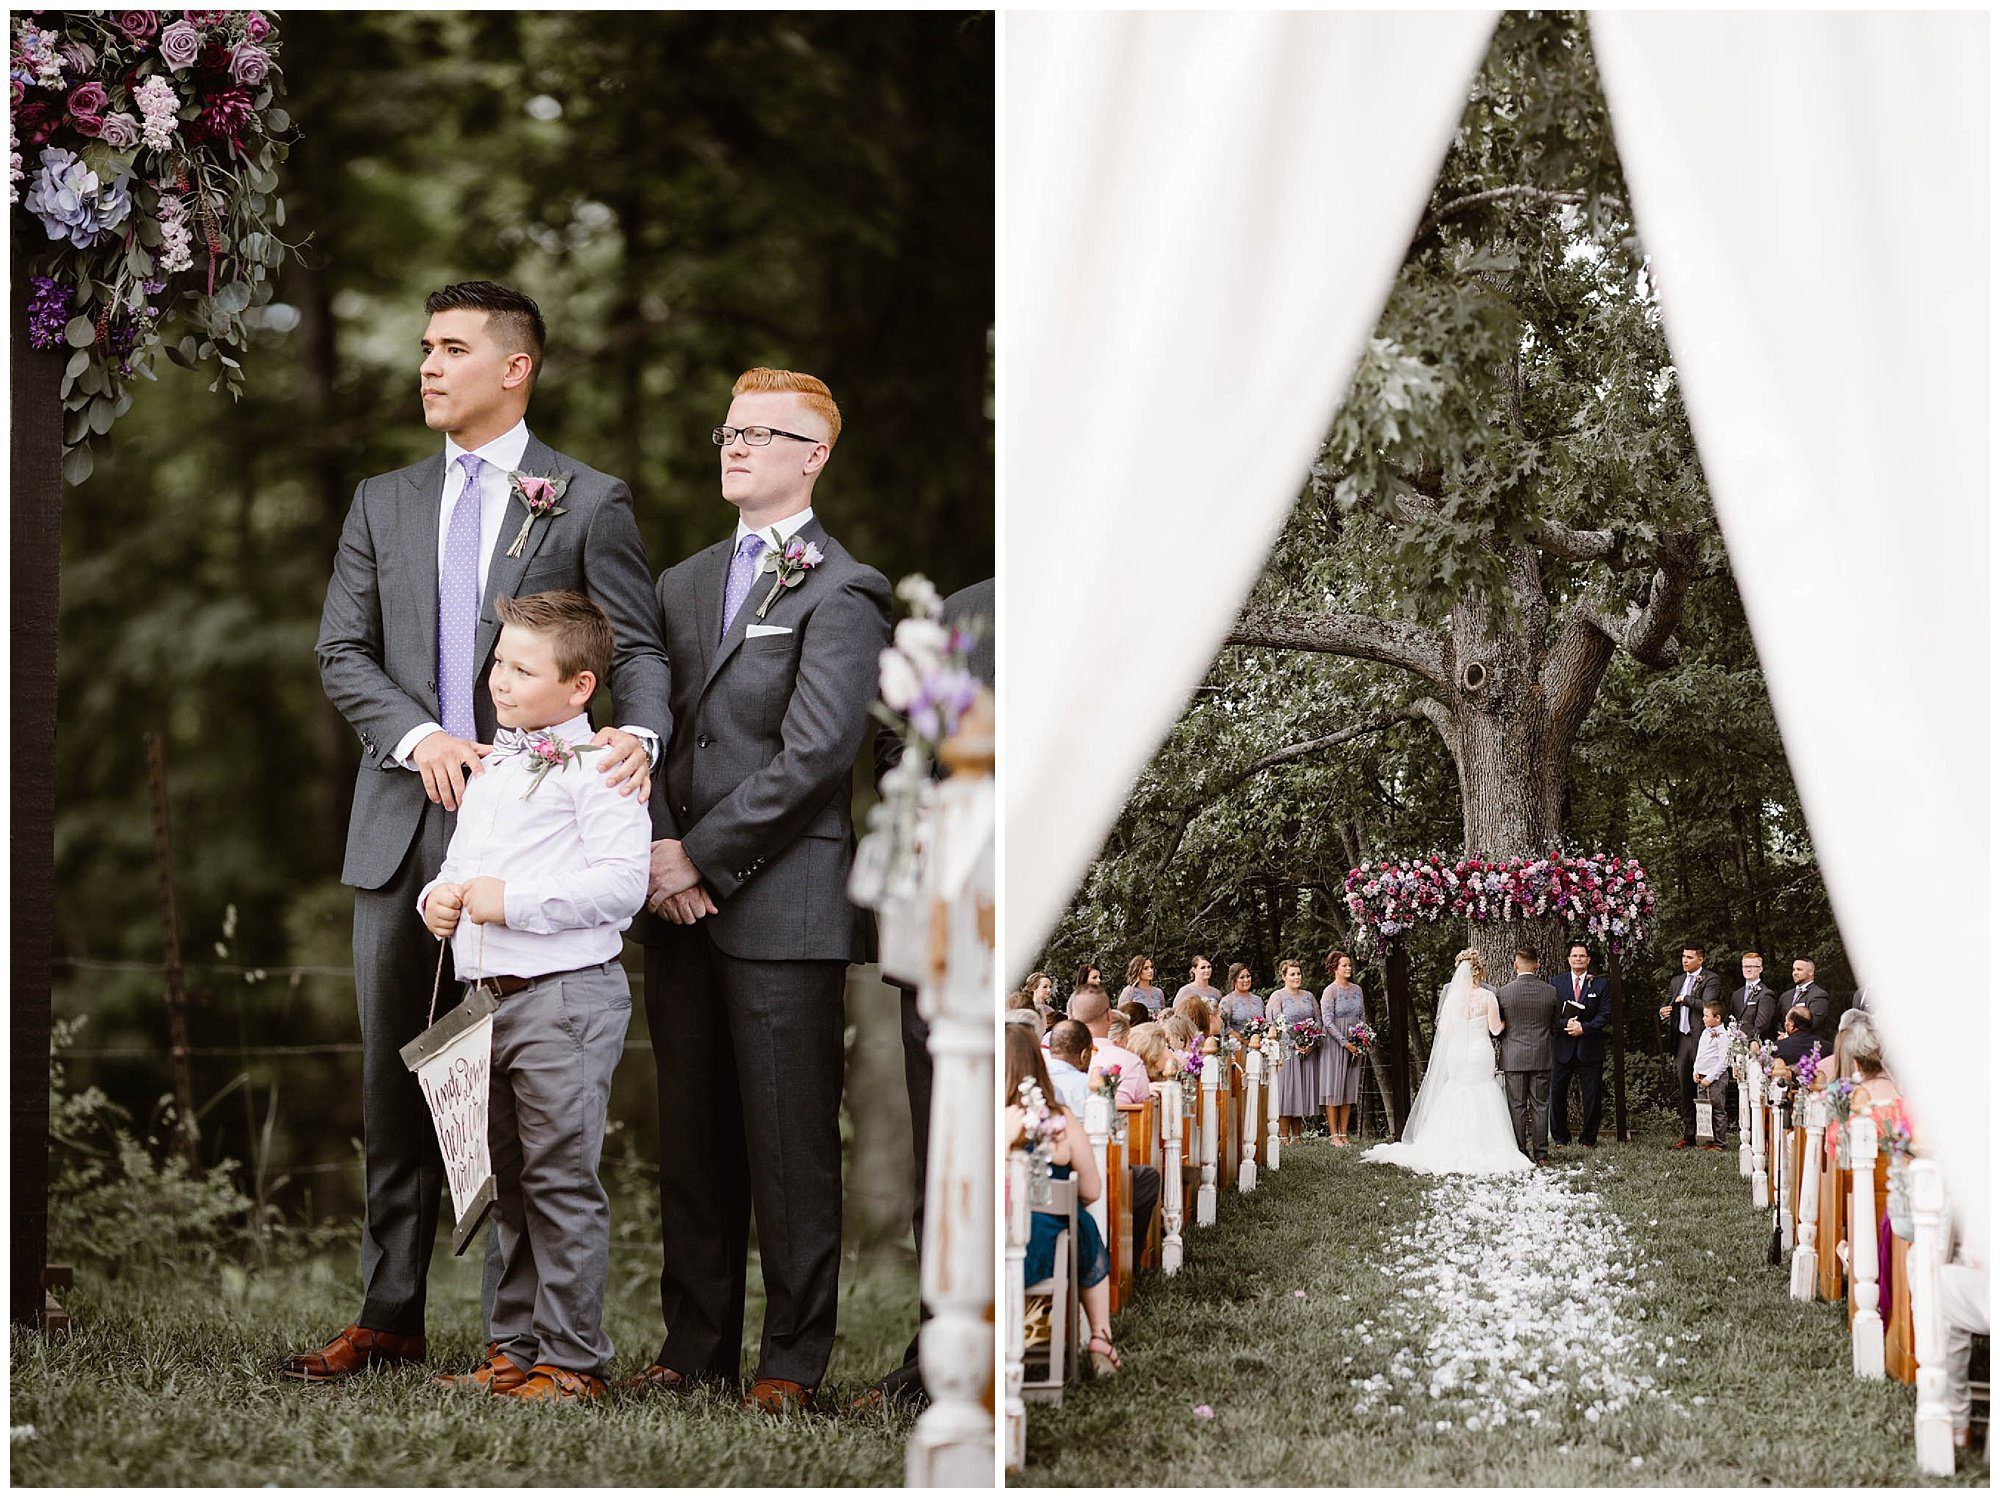 Heartland Meadows Wedding Ceremony